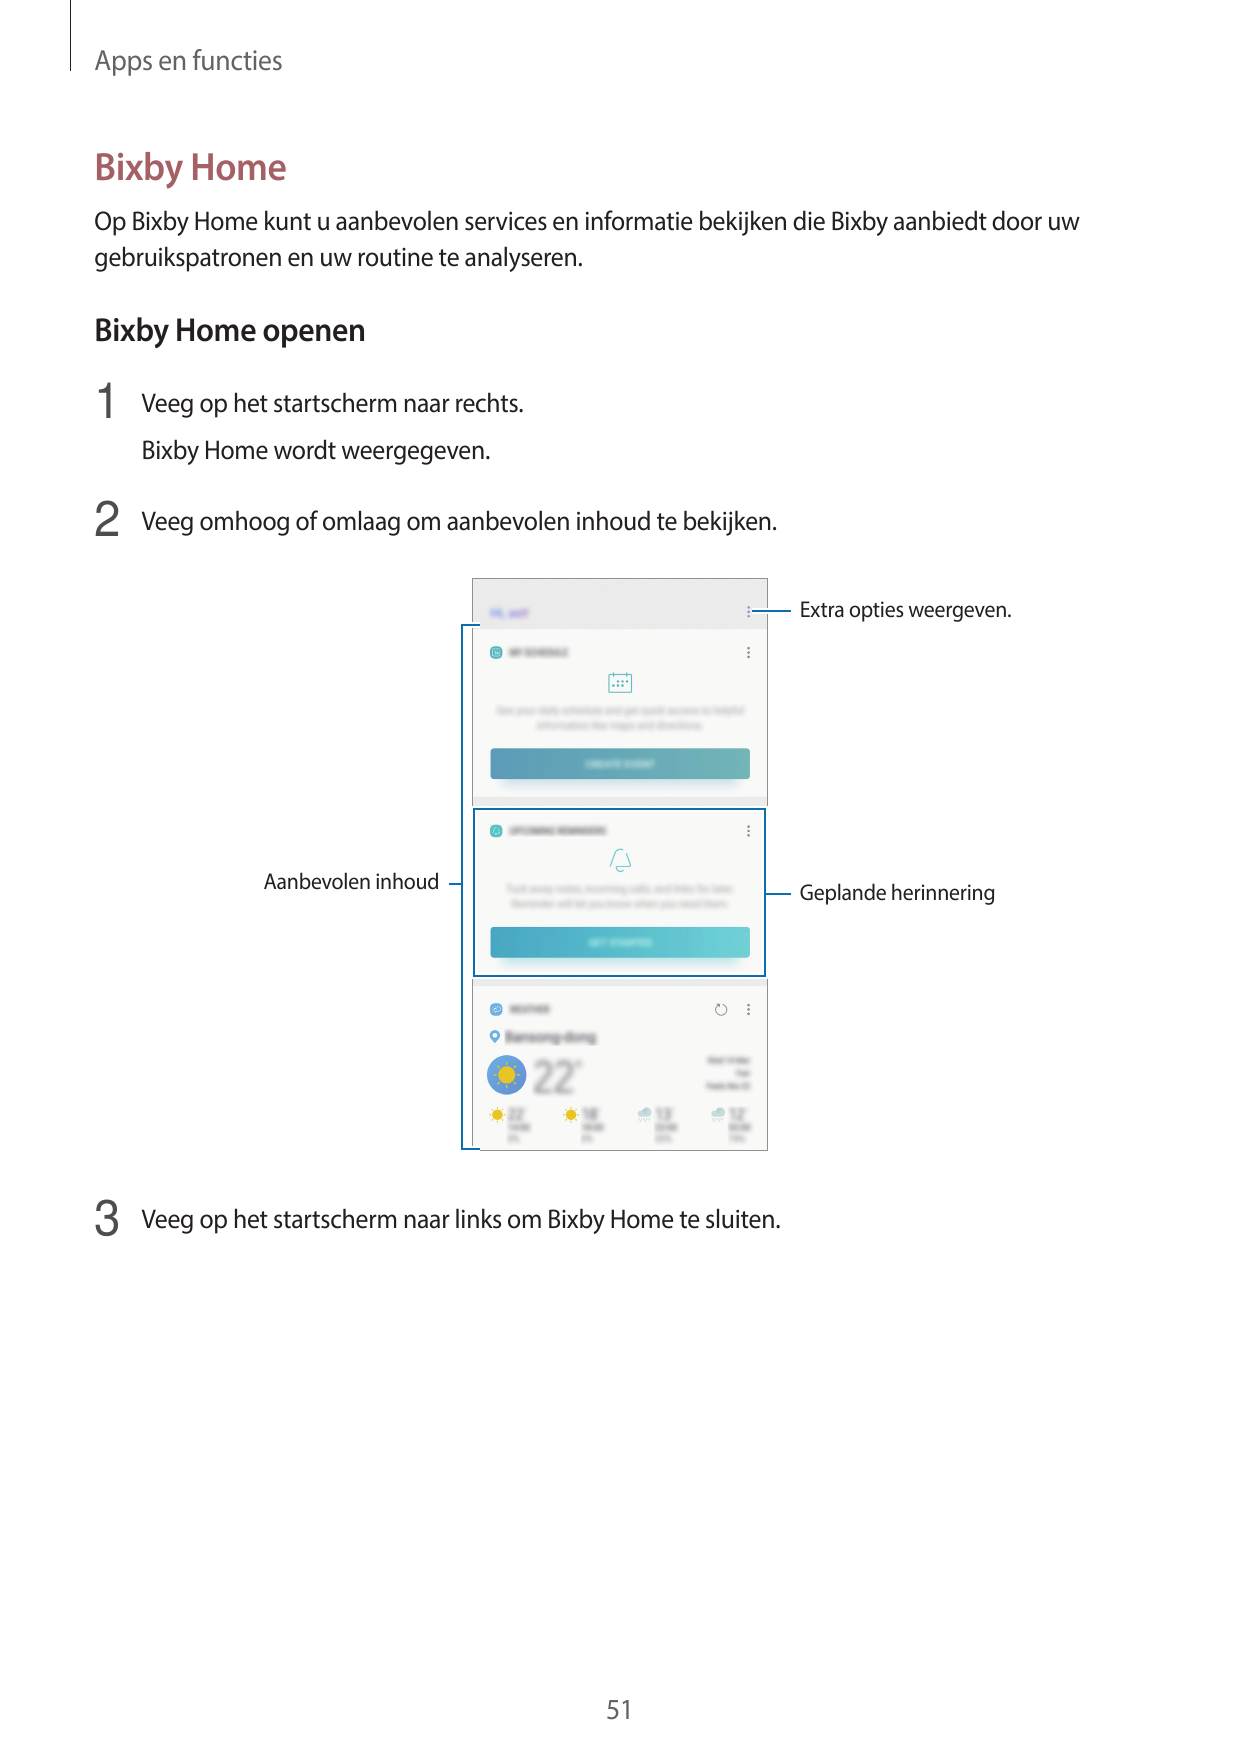 Apps en functiesBixby HomeOp Bixby Home kunt u aanbevolen services en informatie bekijken die Bixby aanbiedt door uwgebruikspatr